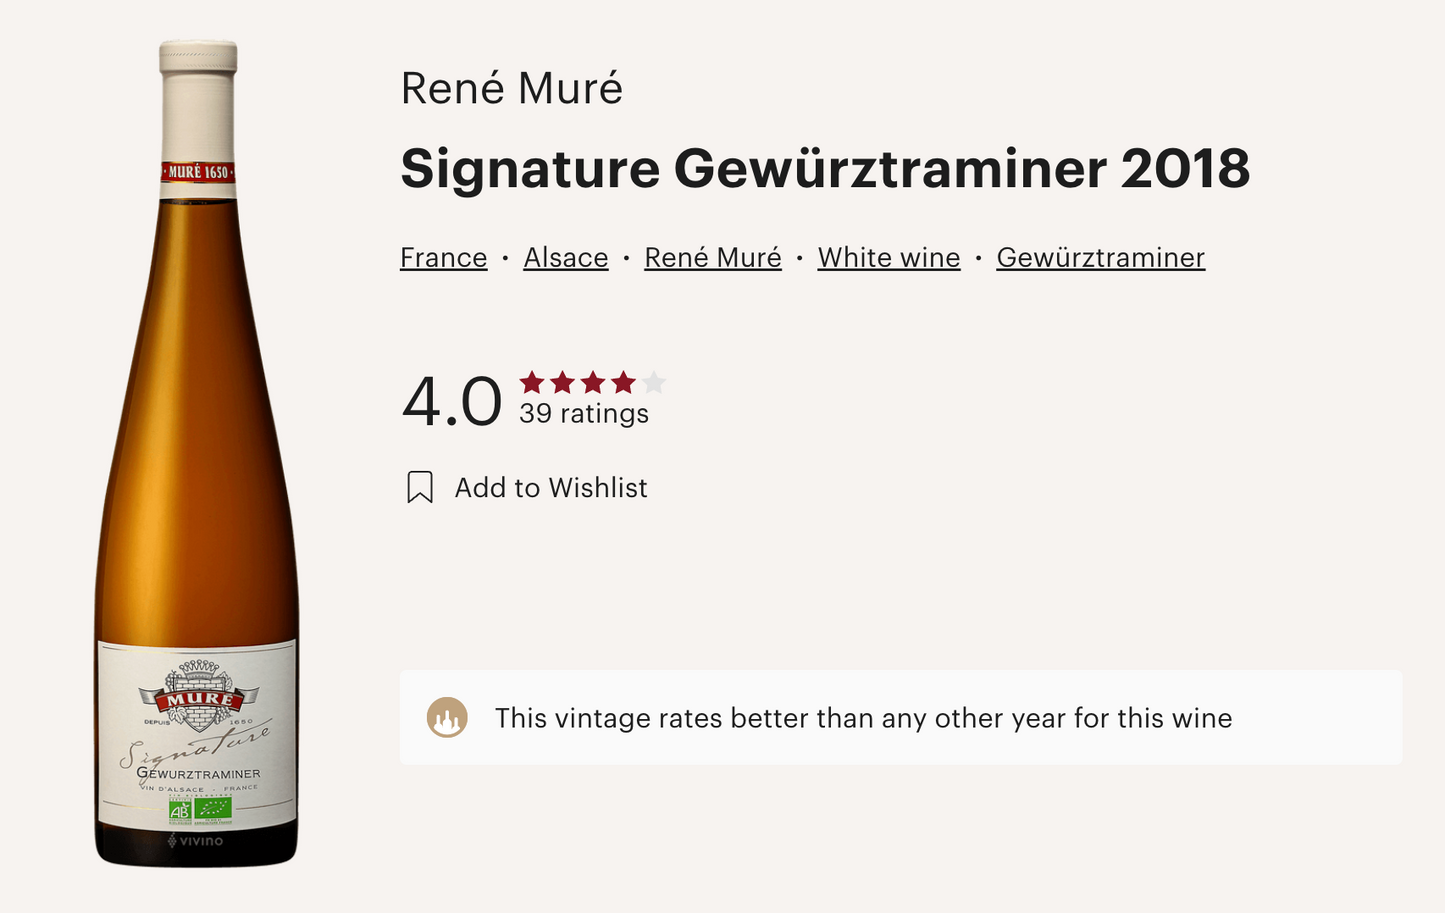 法國 René Muré Gewürztraminer Signature 2018 白酒